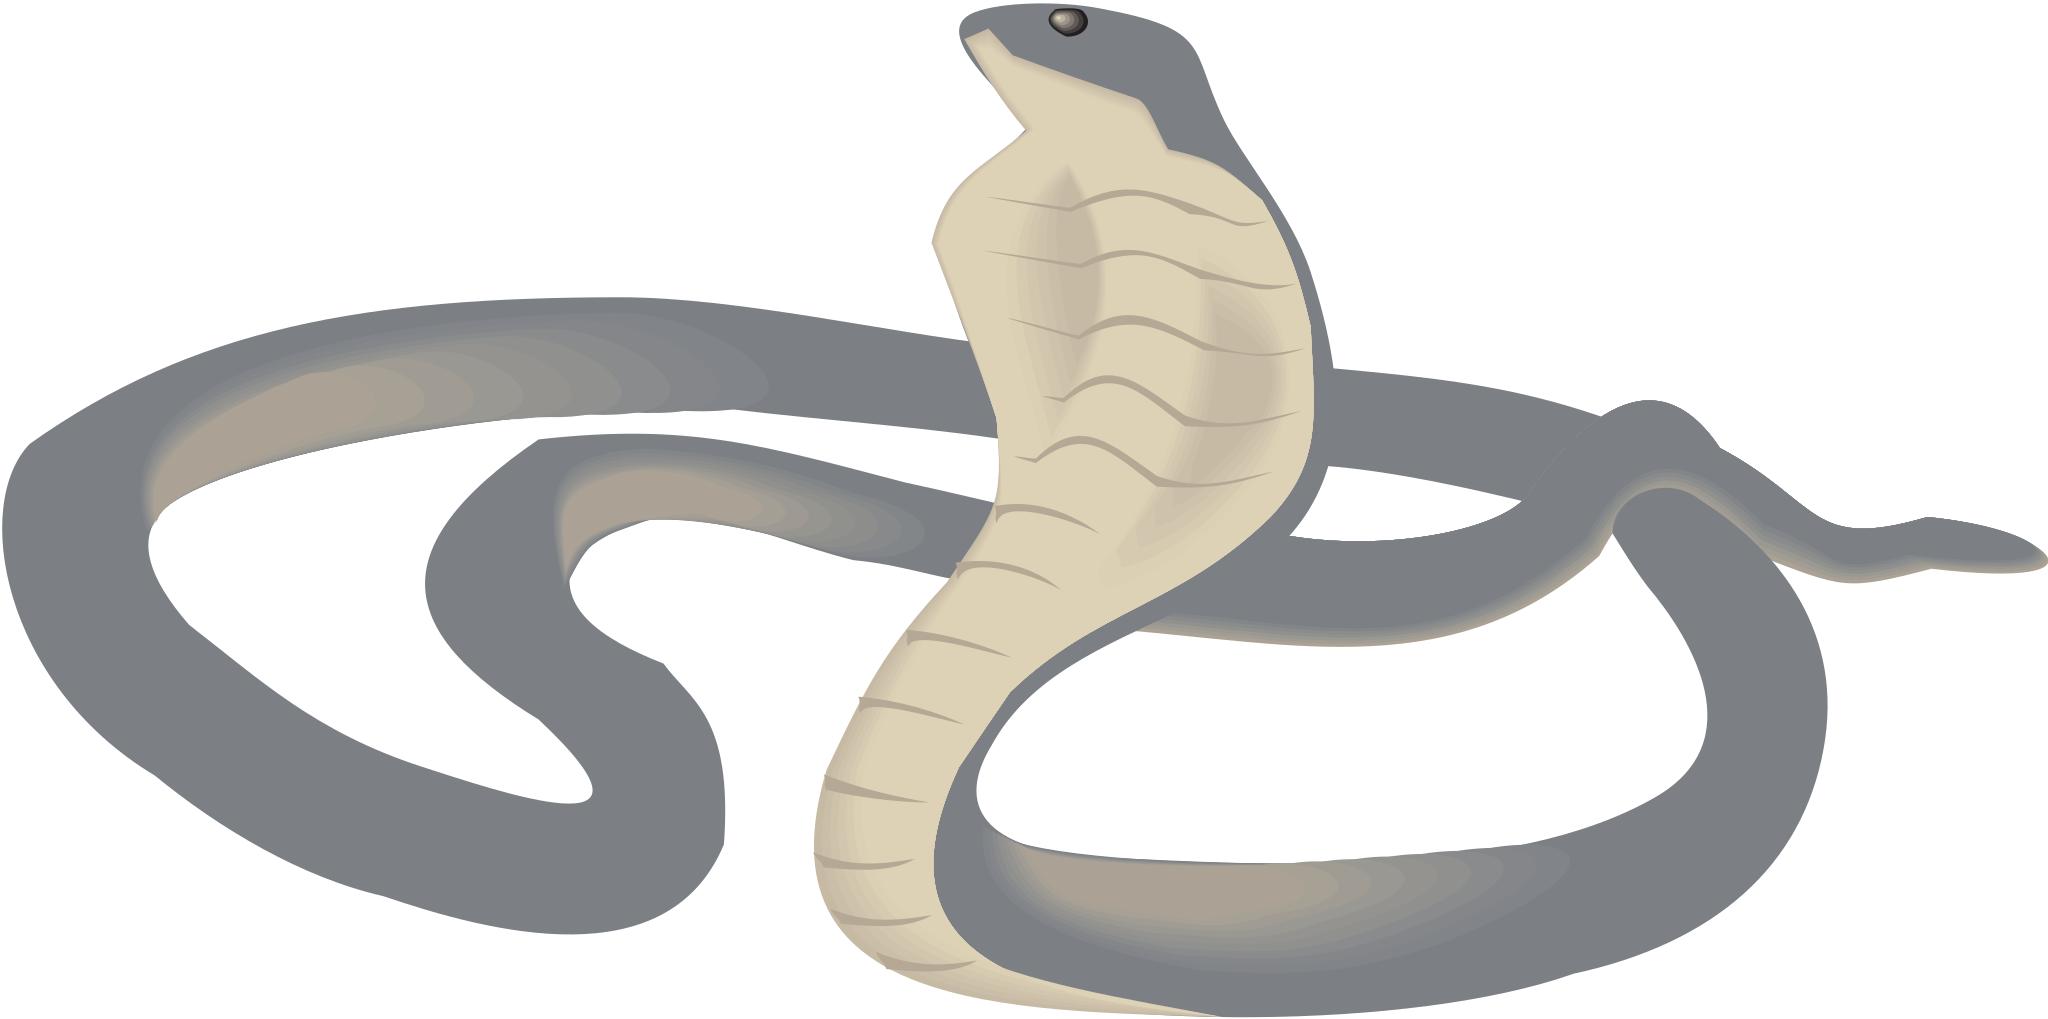 Змея на белом фоне нарисованная